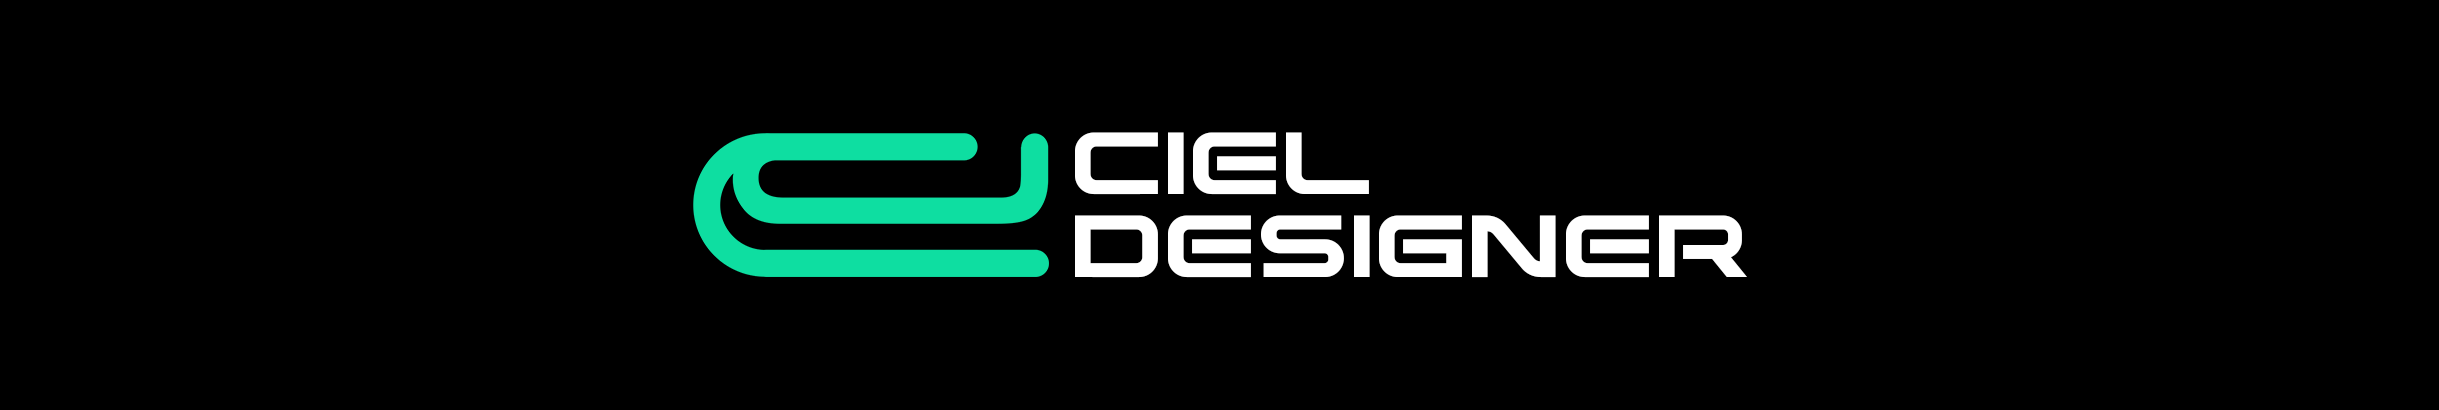 Ciel Designer's profile banner